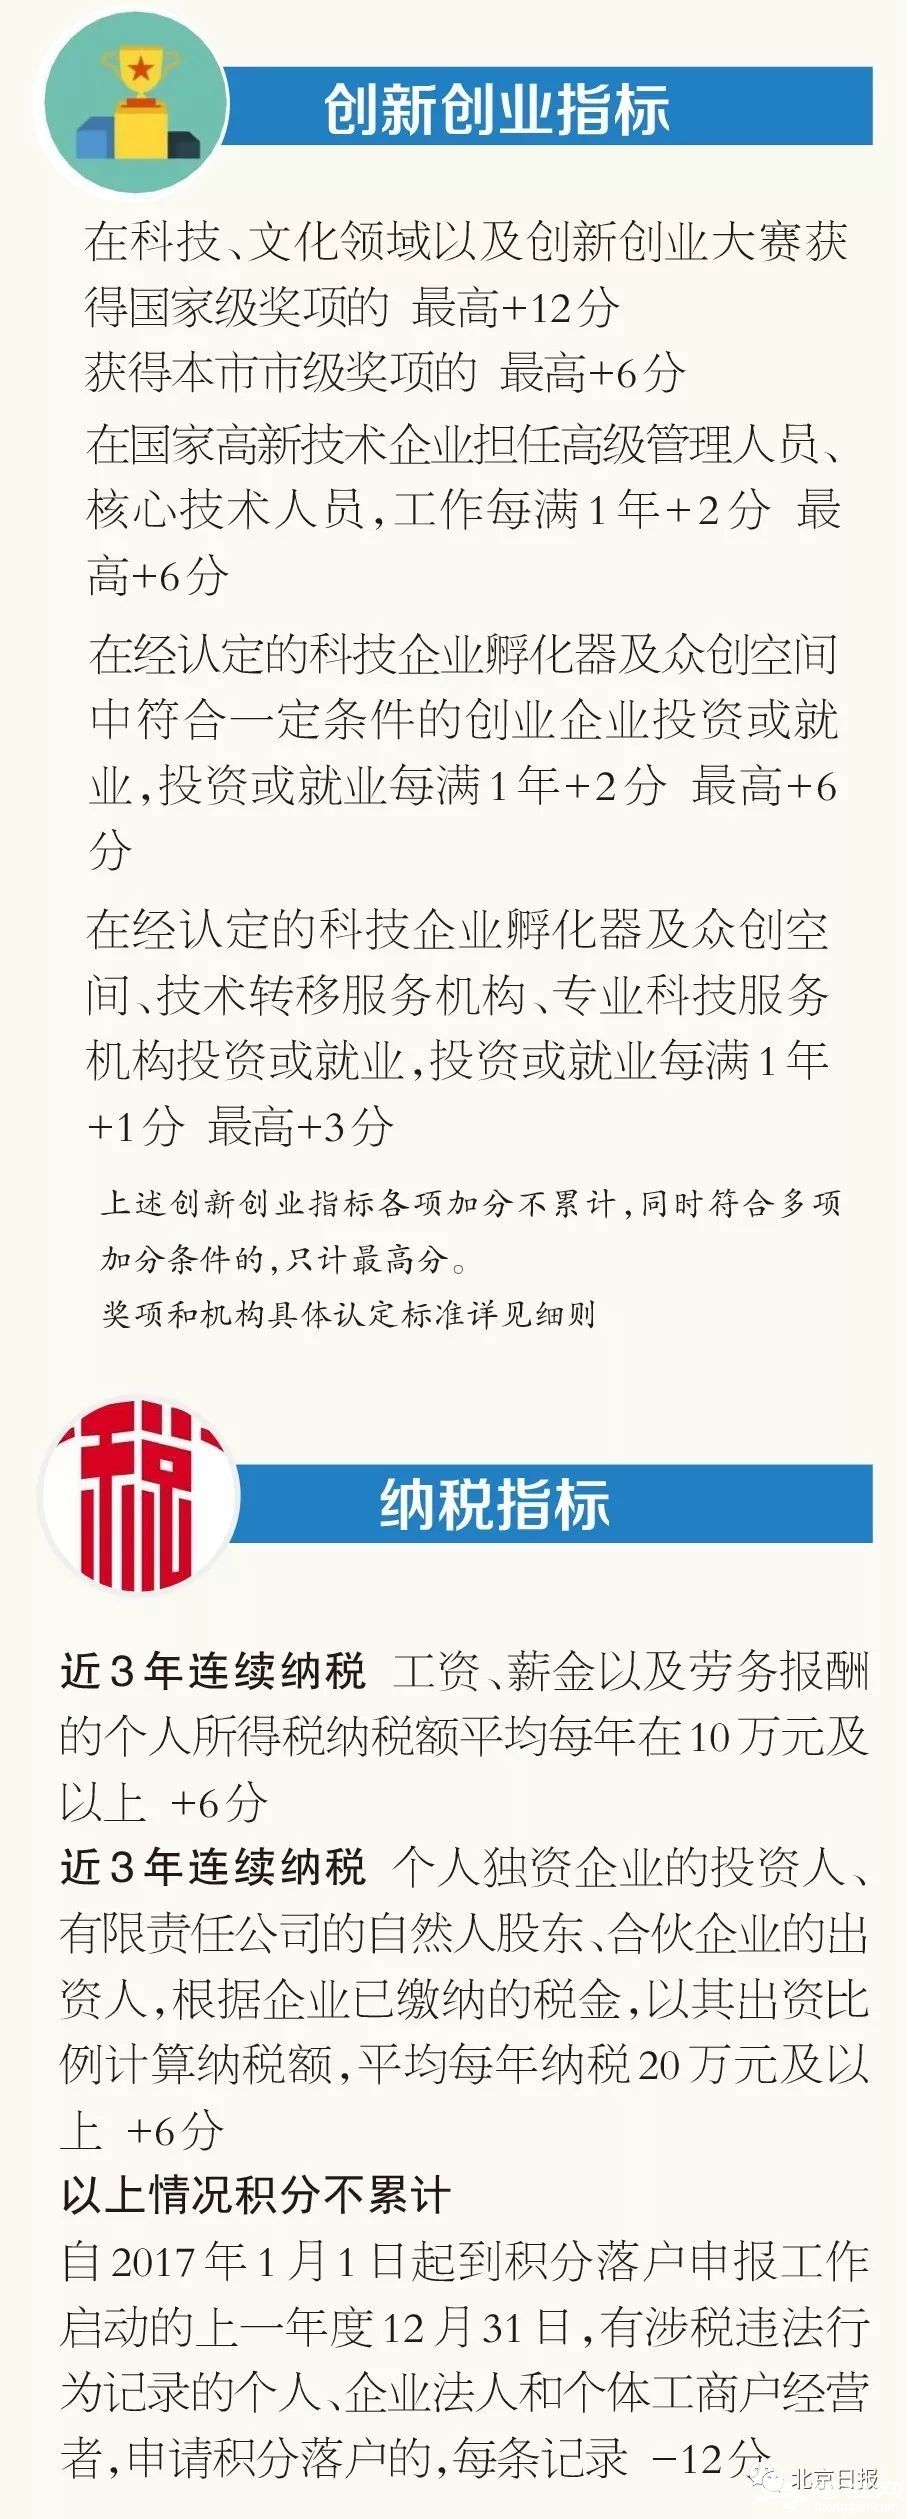 北京积分落户申报今天启动 个税指标操作方式有变化[墙根网]